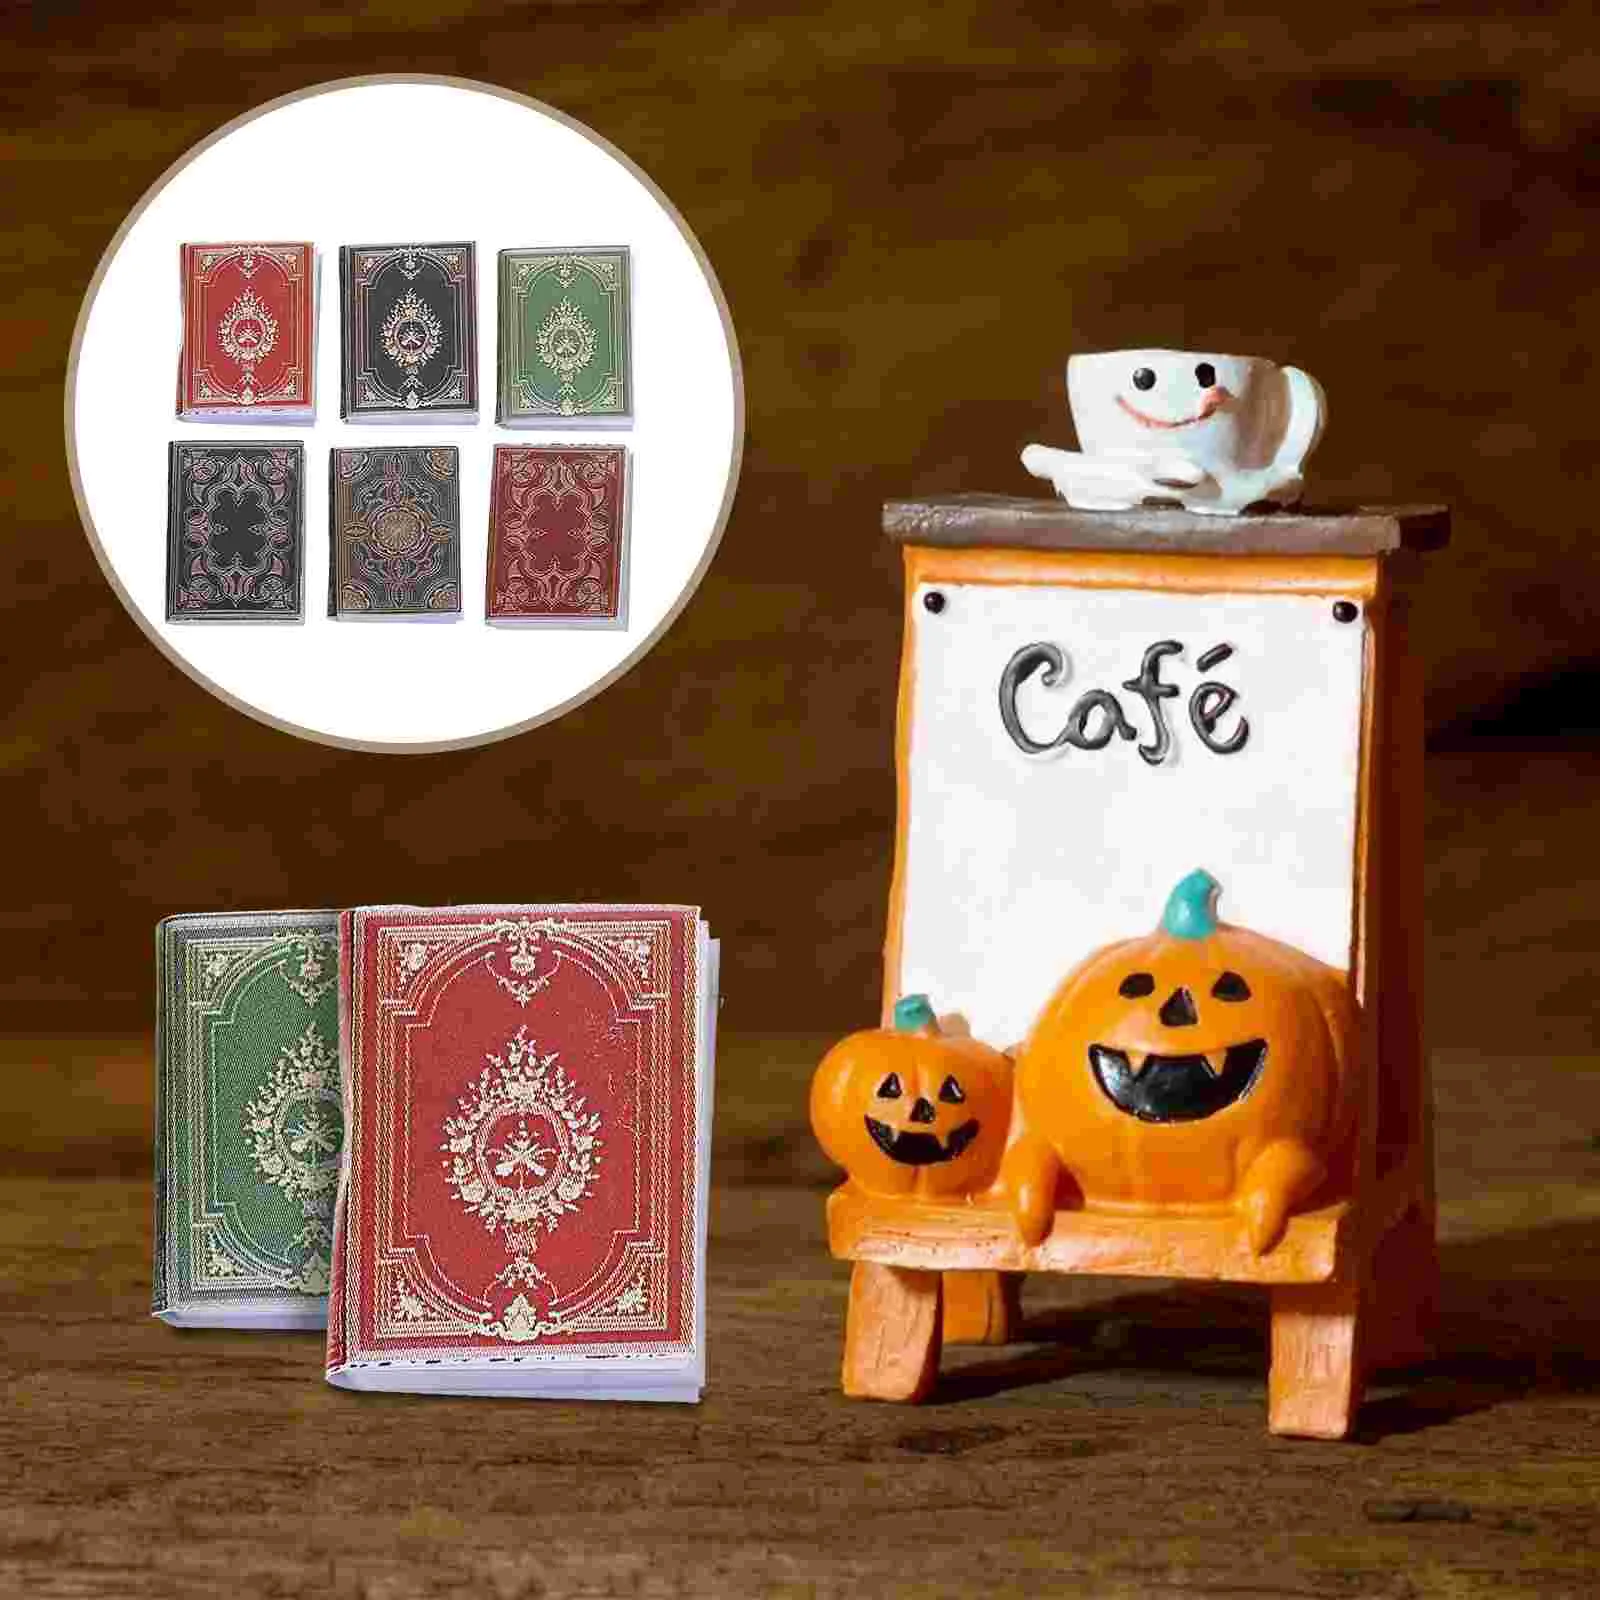 

Mini Books Miniature Book Accessoriesfurniture Miniatures Ornament Accessory Boyskids Supplies Toy Play Pretend Girls Scene